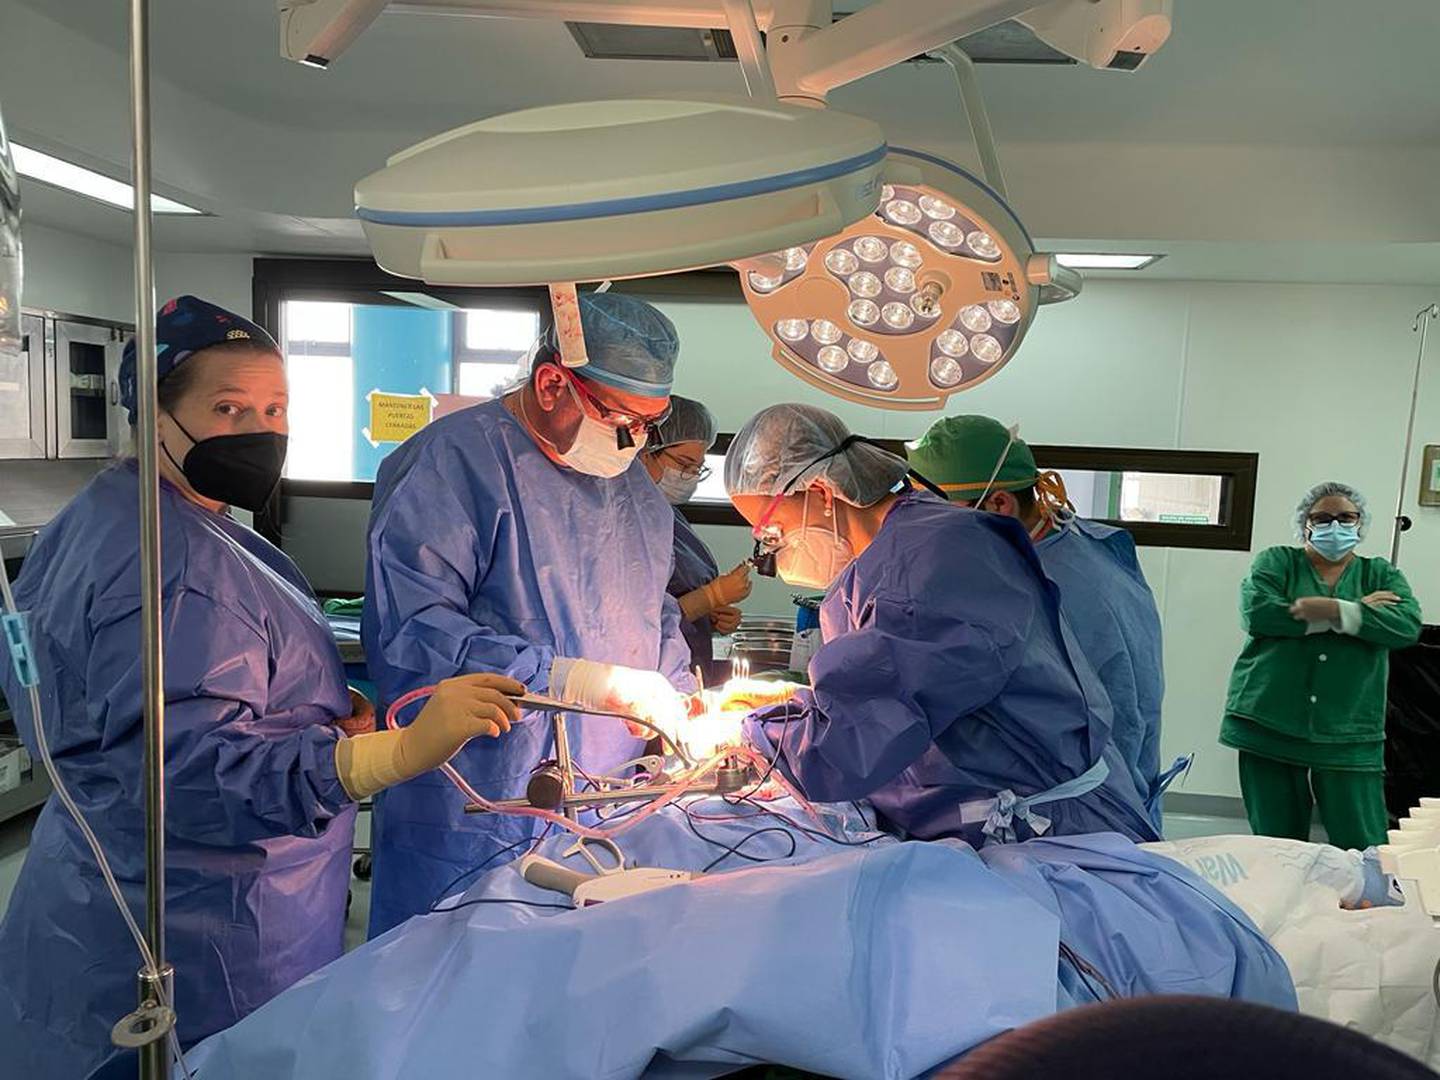 El primer trasplante de riñón con donante vivo realizado en el hospital Maximiliano Peralta Jiménez el pasado 13 de diciembre abre una nueva etapa en este tipo de intervención en Cartago